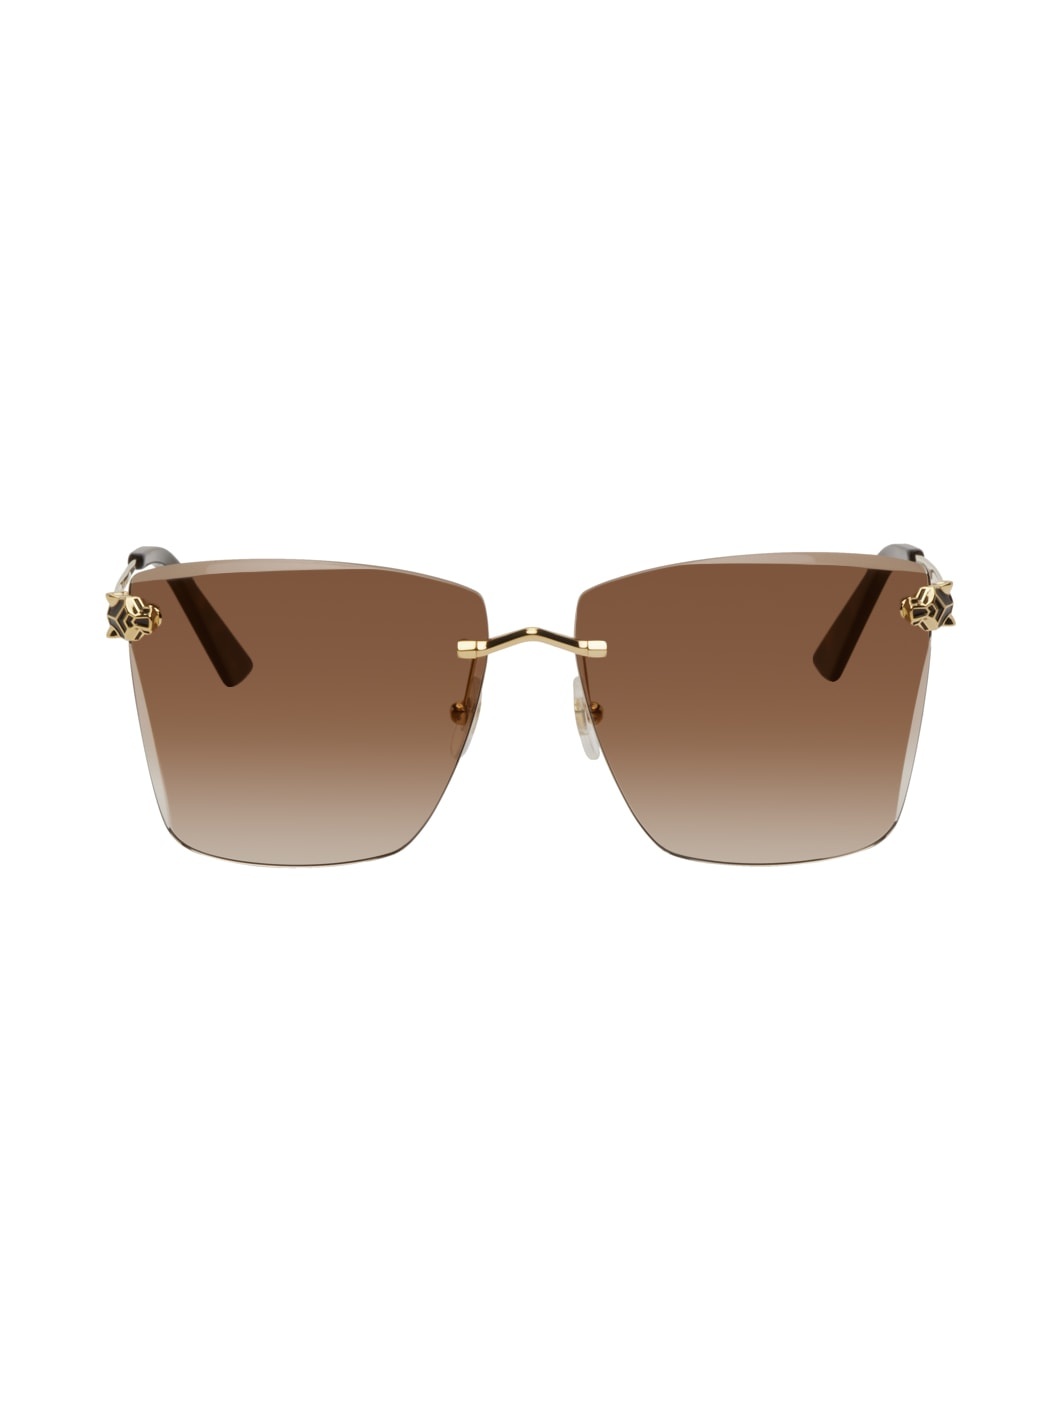 Gold Square Sunglasses - 1